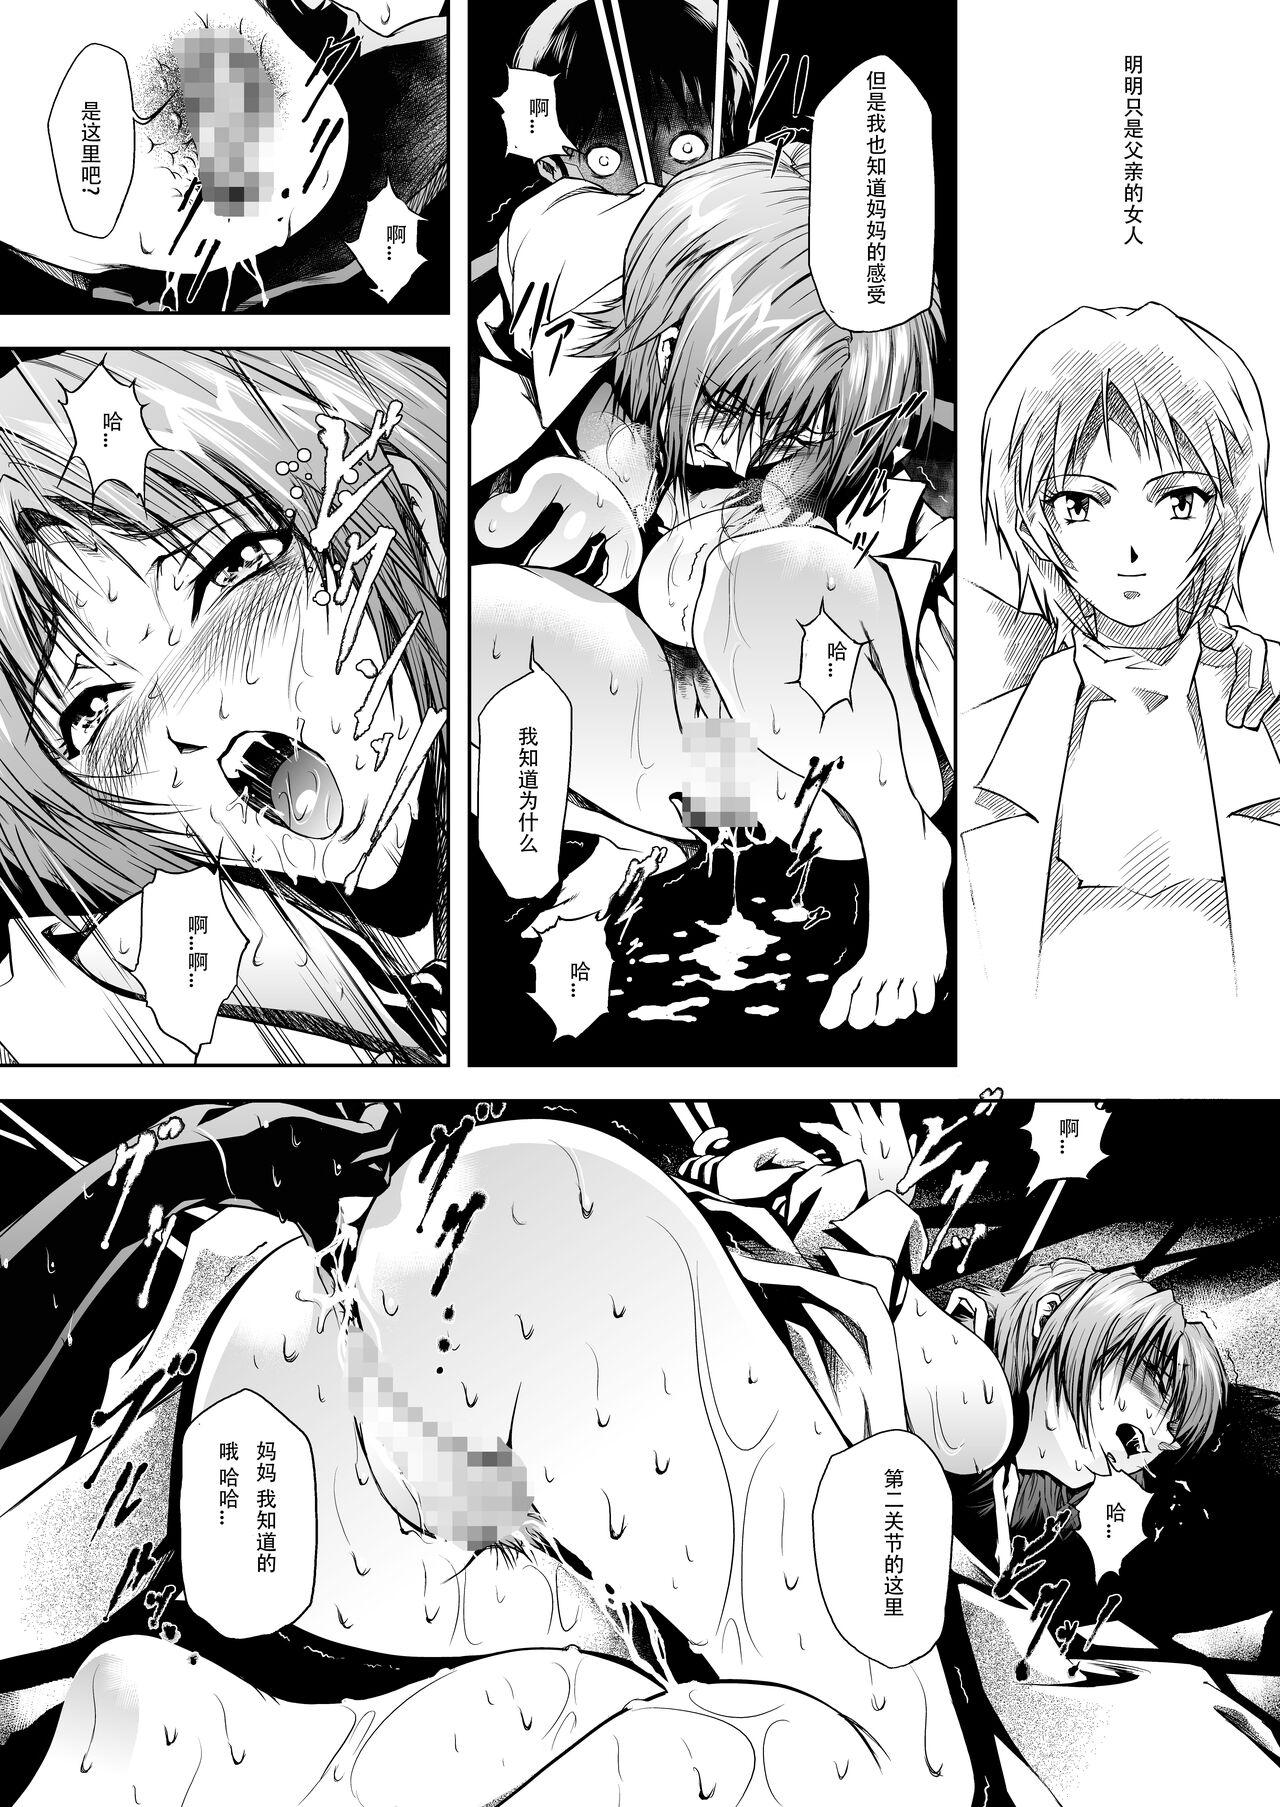 Leather Bosei no Shinjitsu - Neon genesis evangelion Butt Plug - Page 8